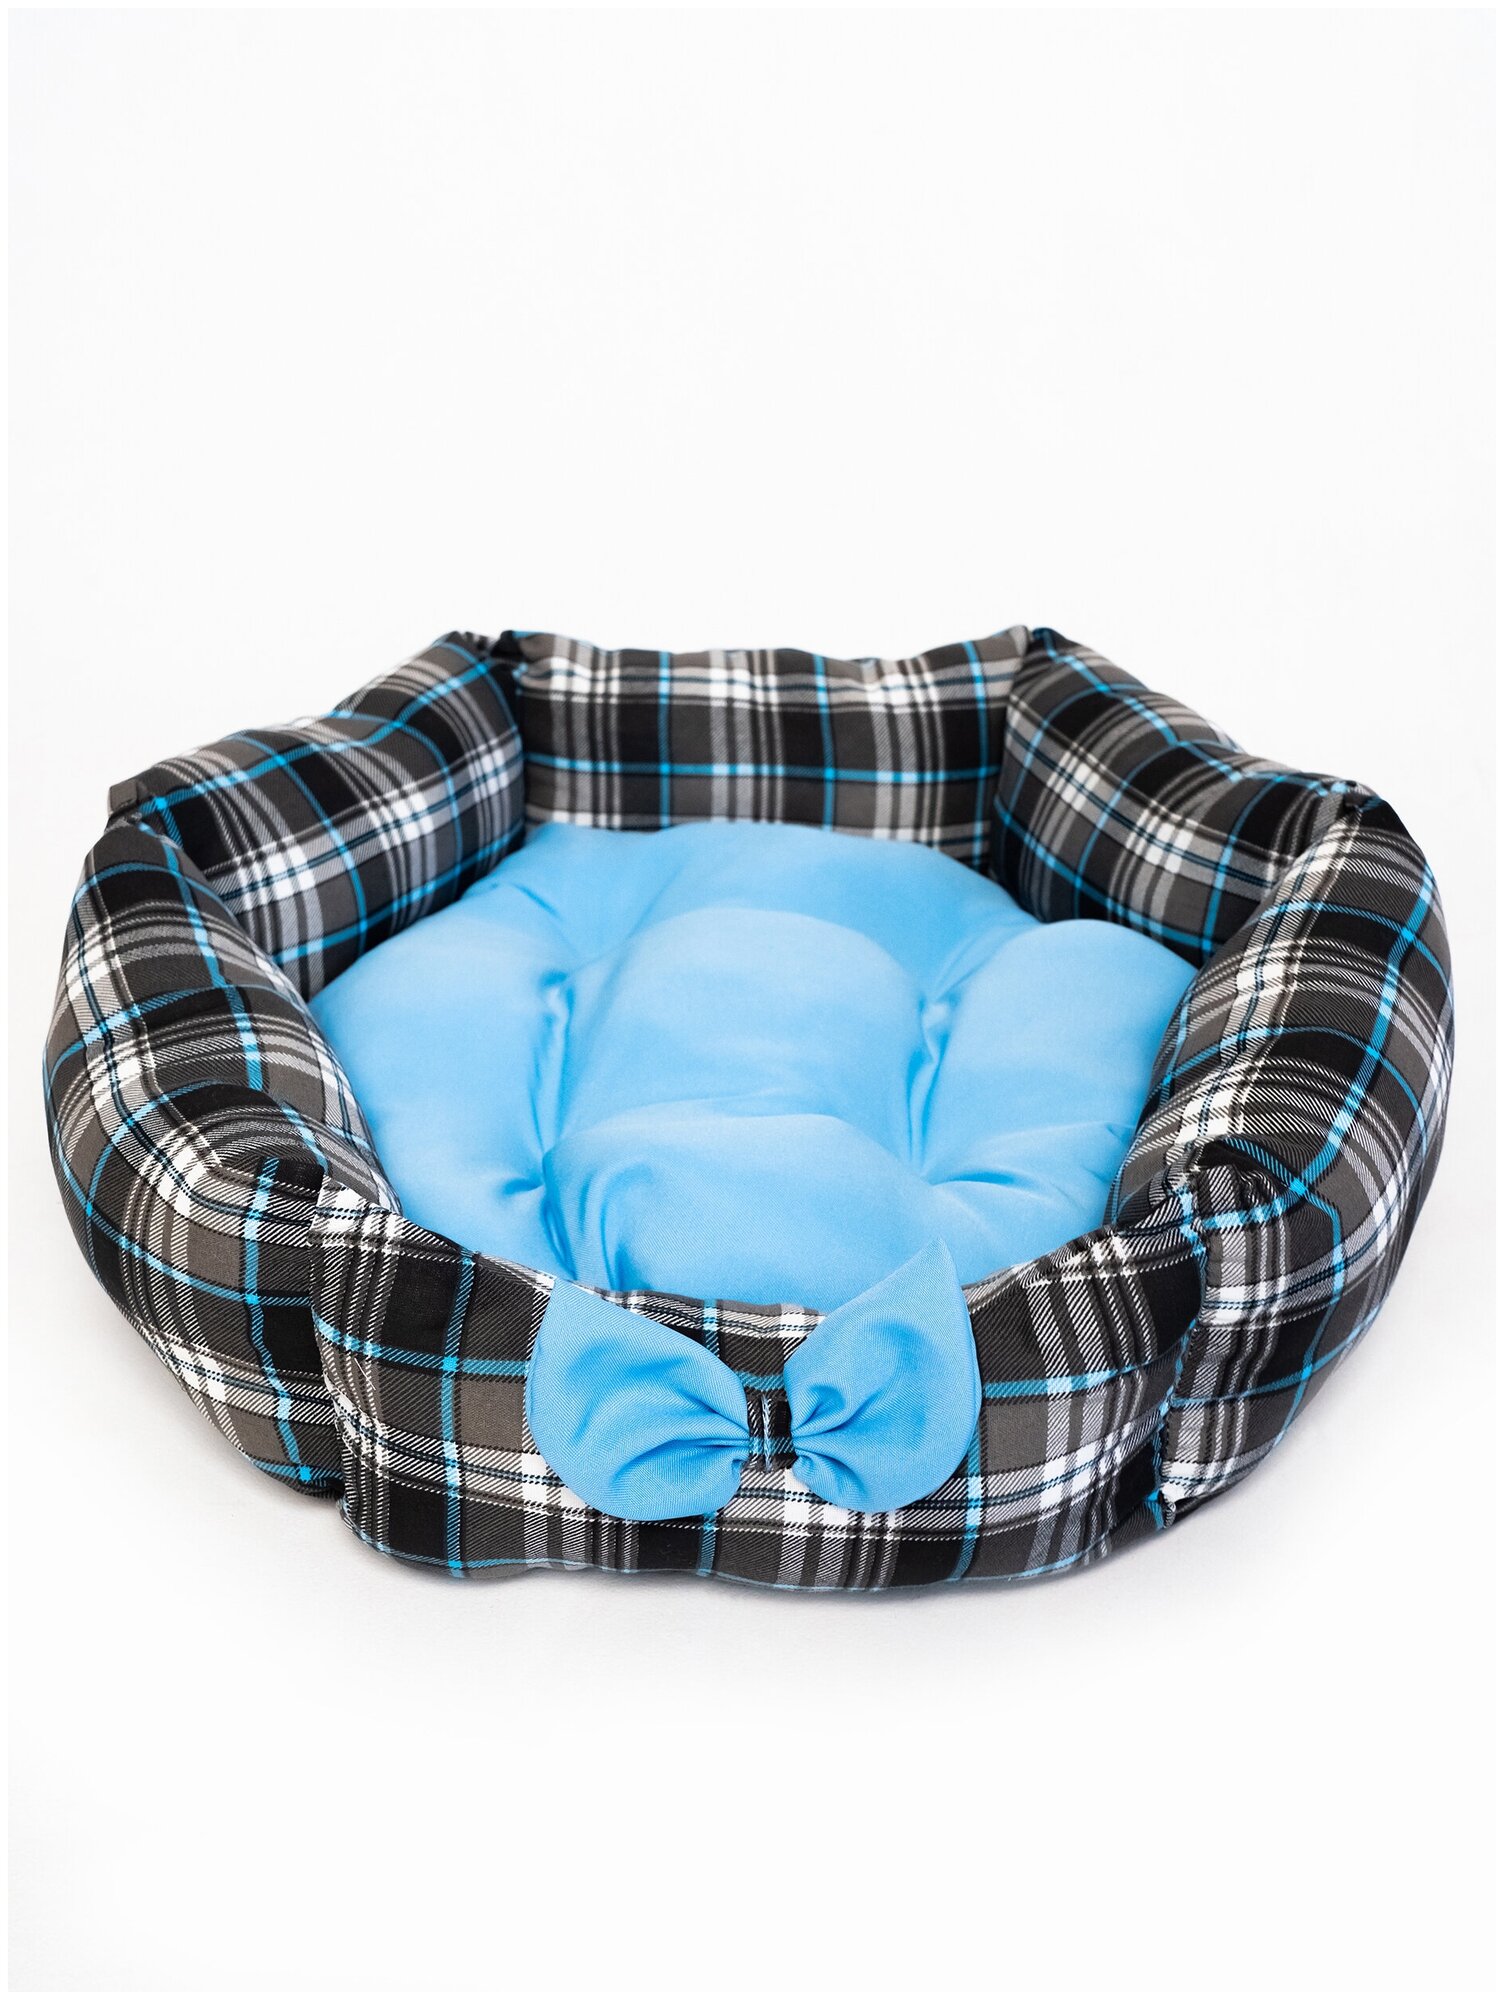 Лежанка для собаки Клампи Комфорт, М, 55х55 см, синяя